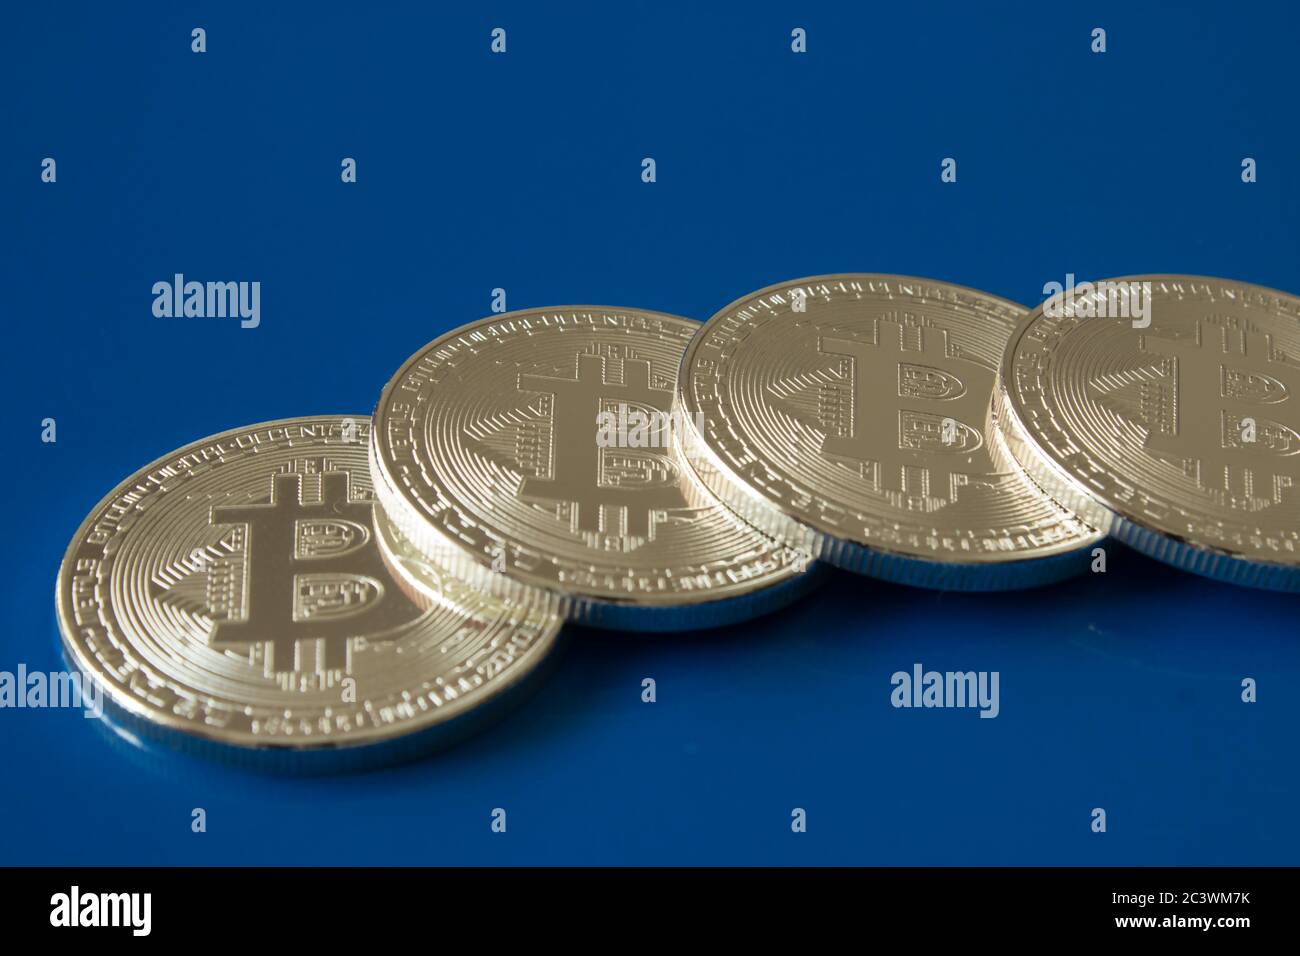 Auf einem blauen Hintergrund mit freiem Textraum sind Silbermünzen einer digitalen Kryptowährung - Bitcoin Stockfoto